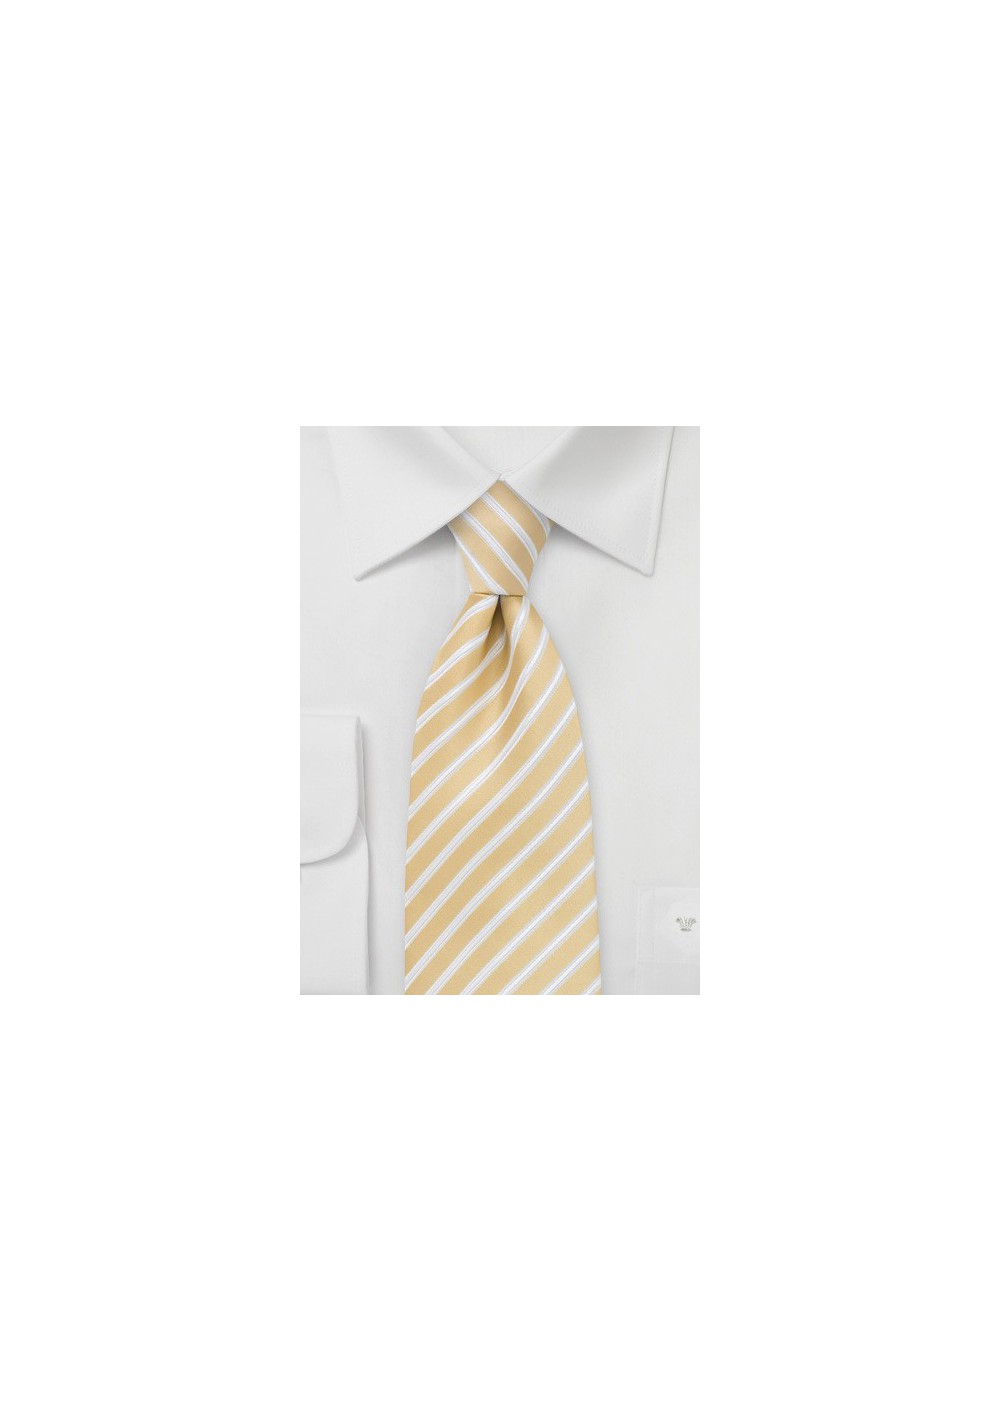 Kids Necktie in Harvest Yellow